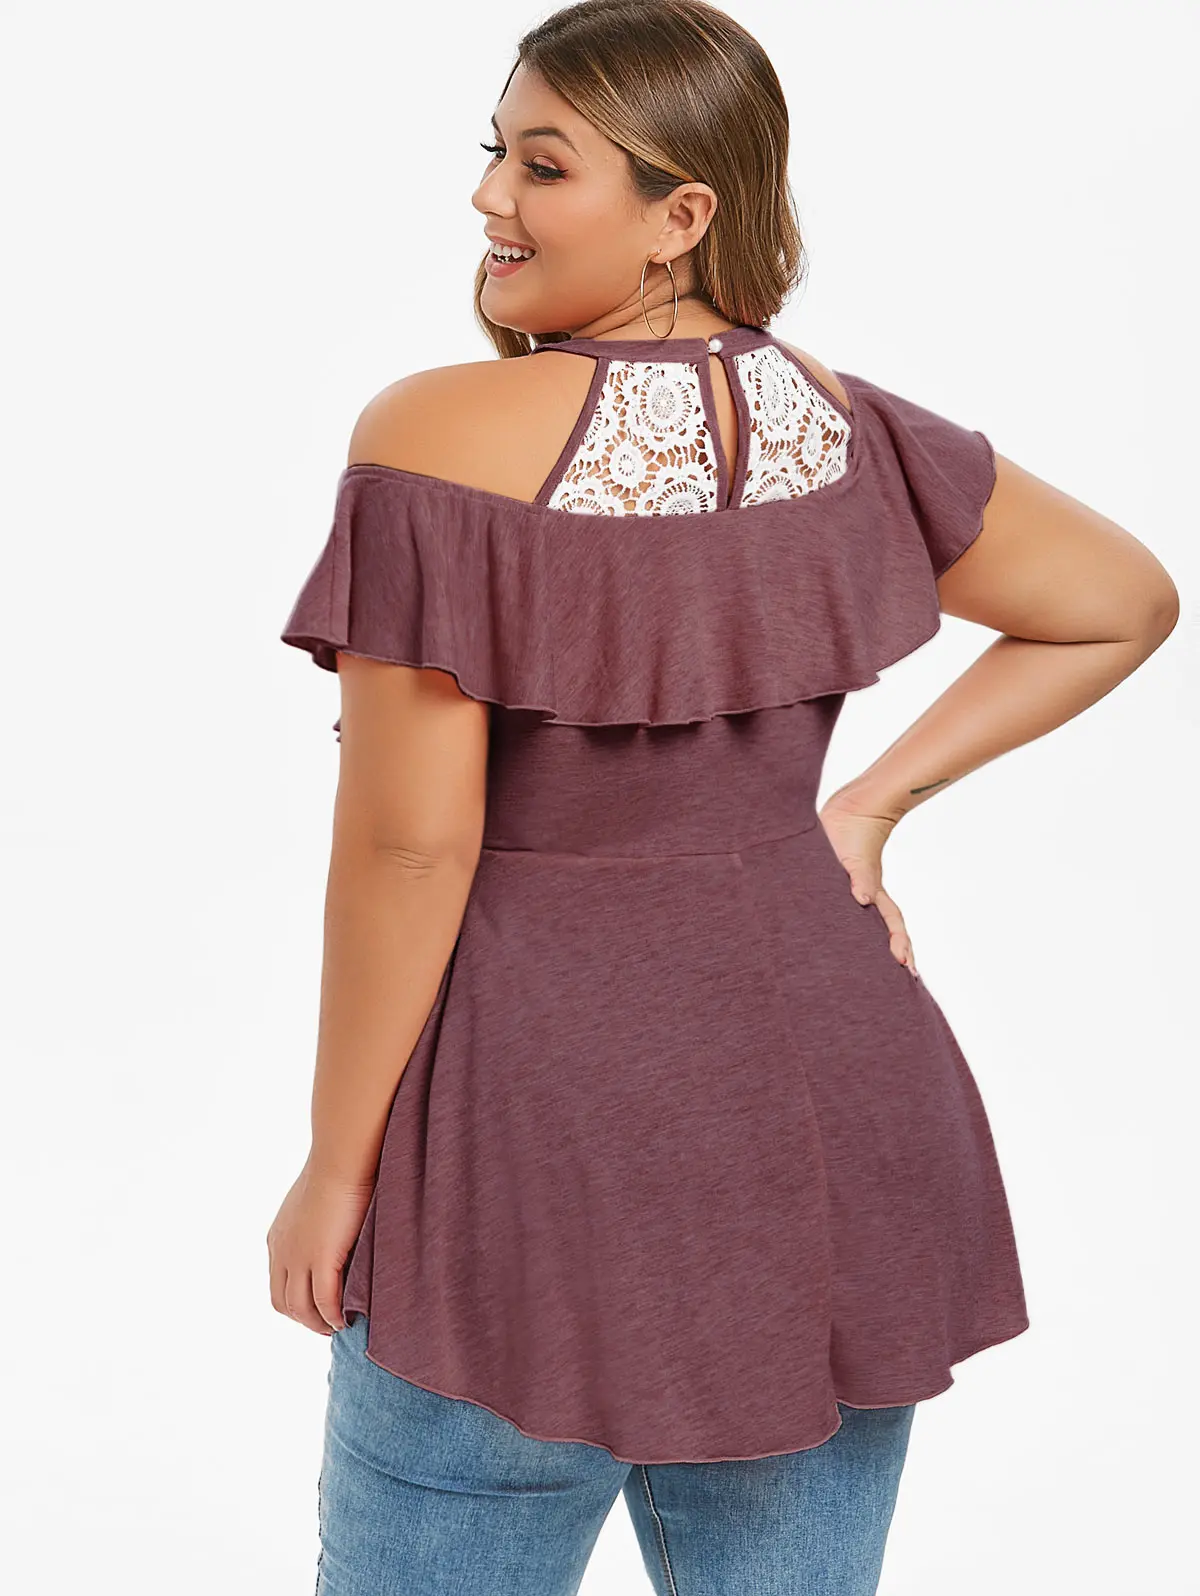 Rosegal Large Size 5XL Sexy Peplum T-Shirts Lace Crochet Long Tunic Top Women Big Size Summer Ruffle Tshirts